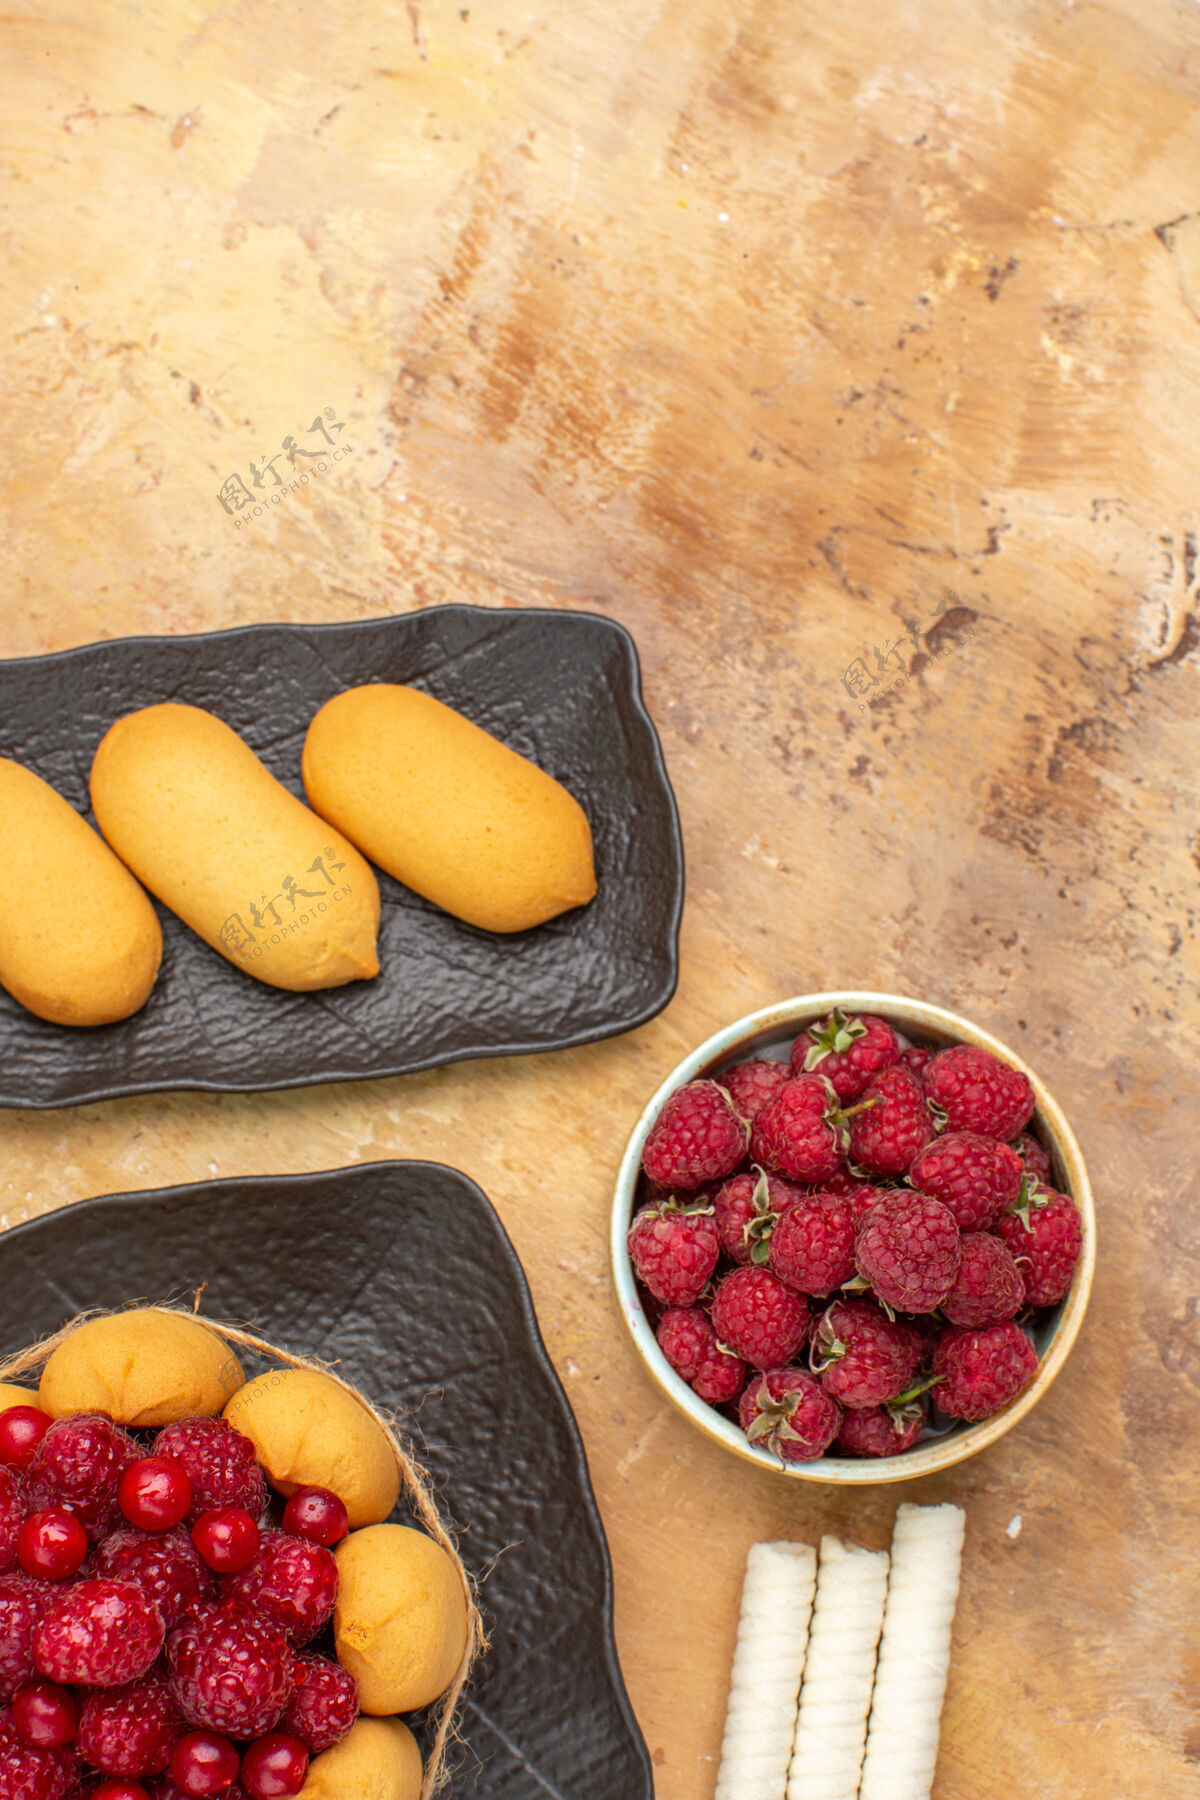 蔬菜礼品蛋糕和饼干放在棕色盘子上水果放在混色桌上俯视农产品盘子水果